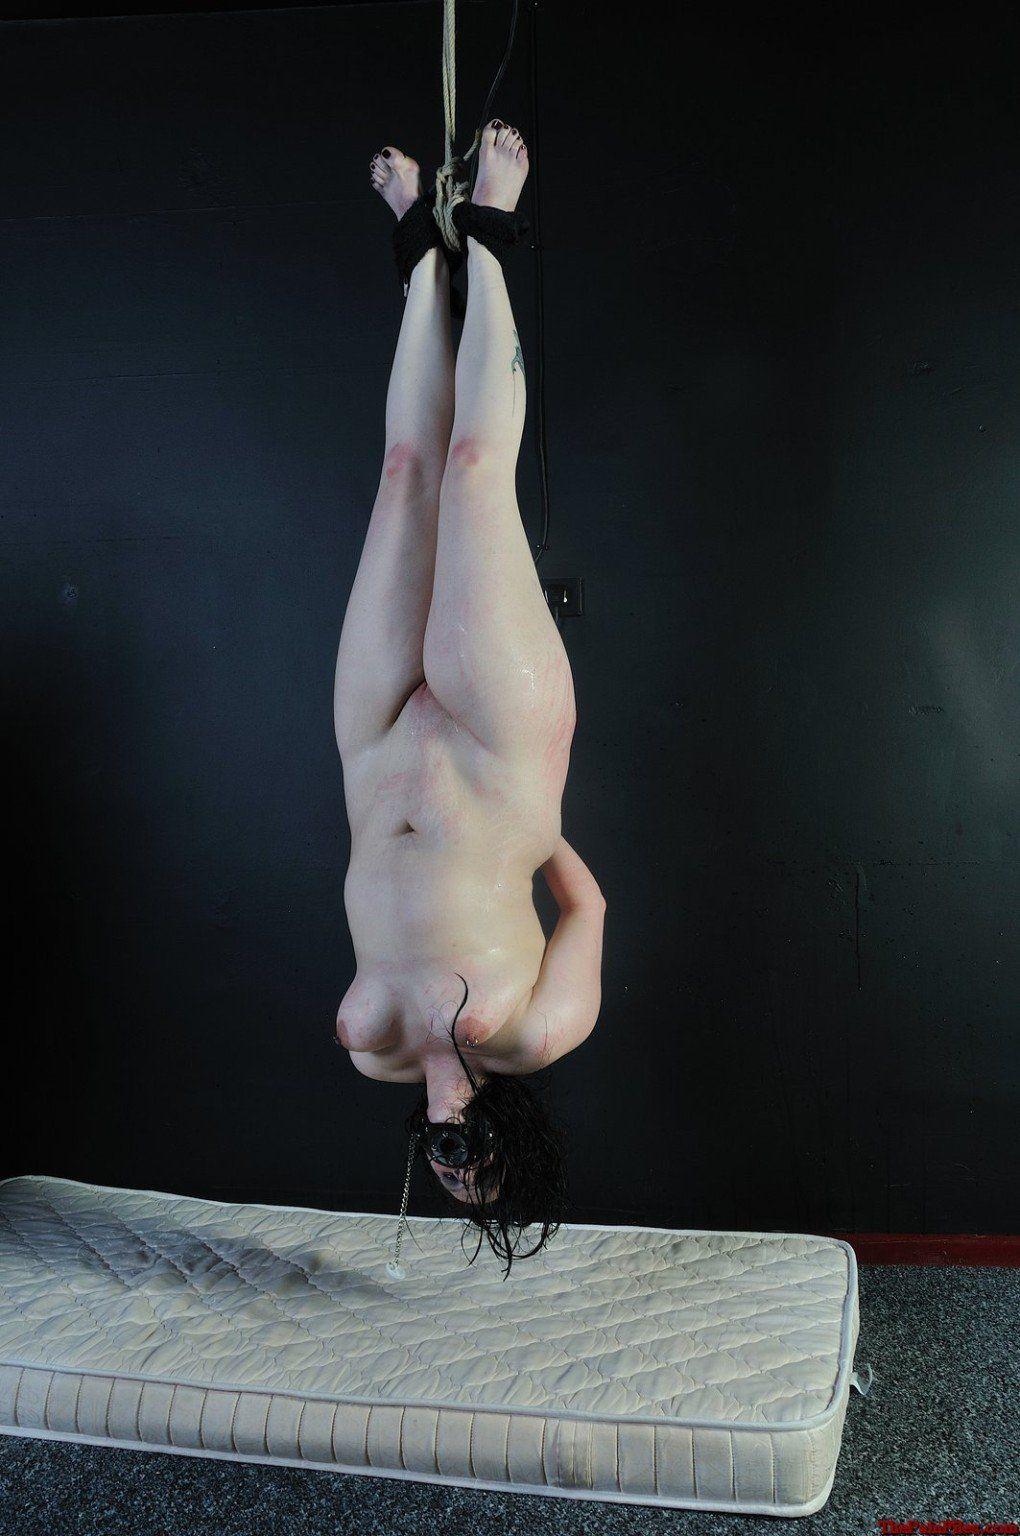 Suspended bondage upside down